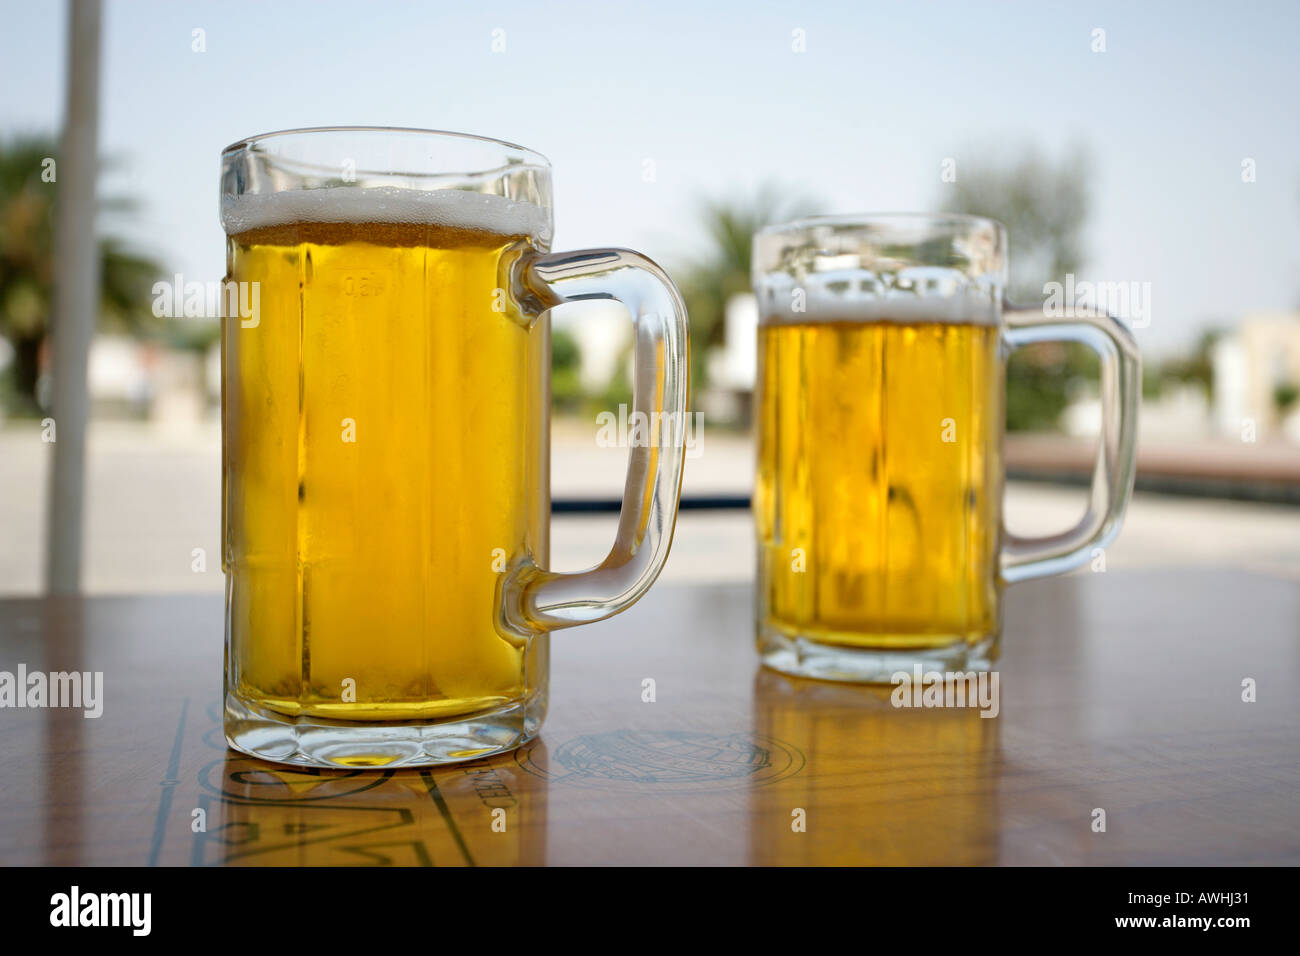 Due gelido freddo pinte di birra servita presso un cafe' all'aperto Foto Stock